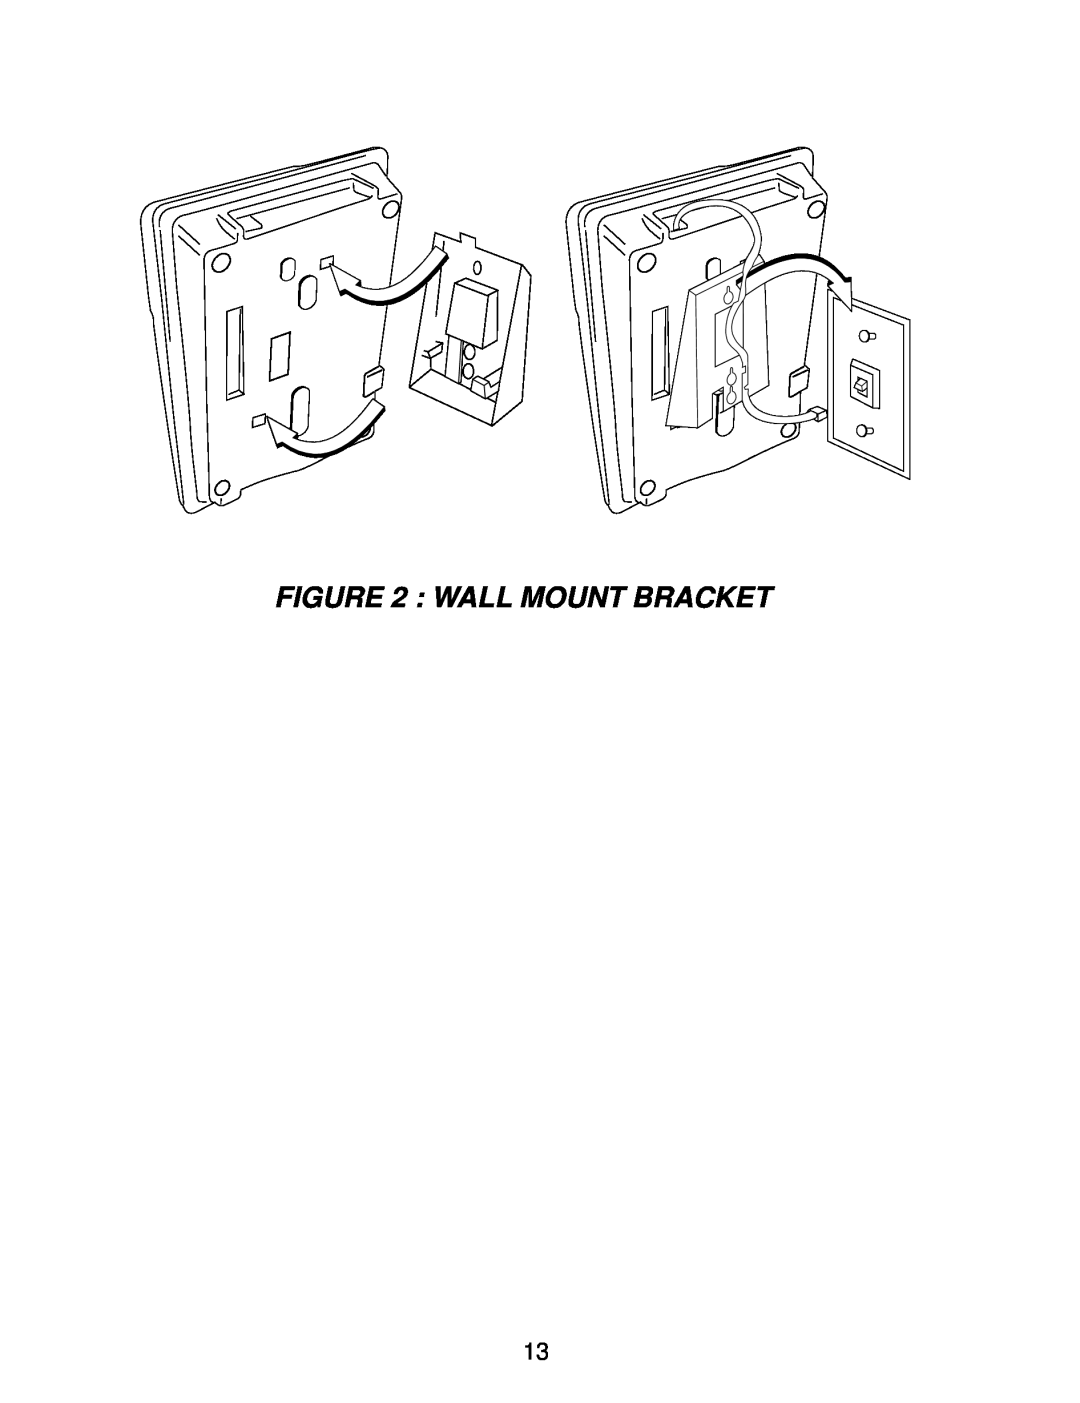 Interquartz IQ331 manual Wall Mount Bracket 